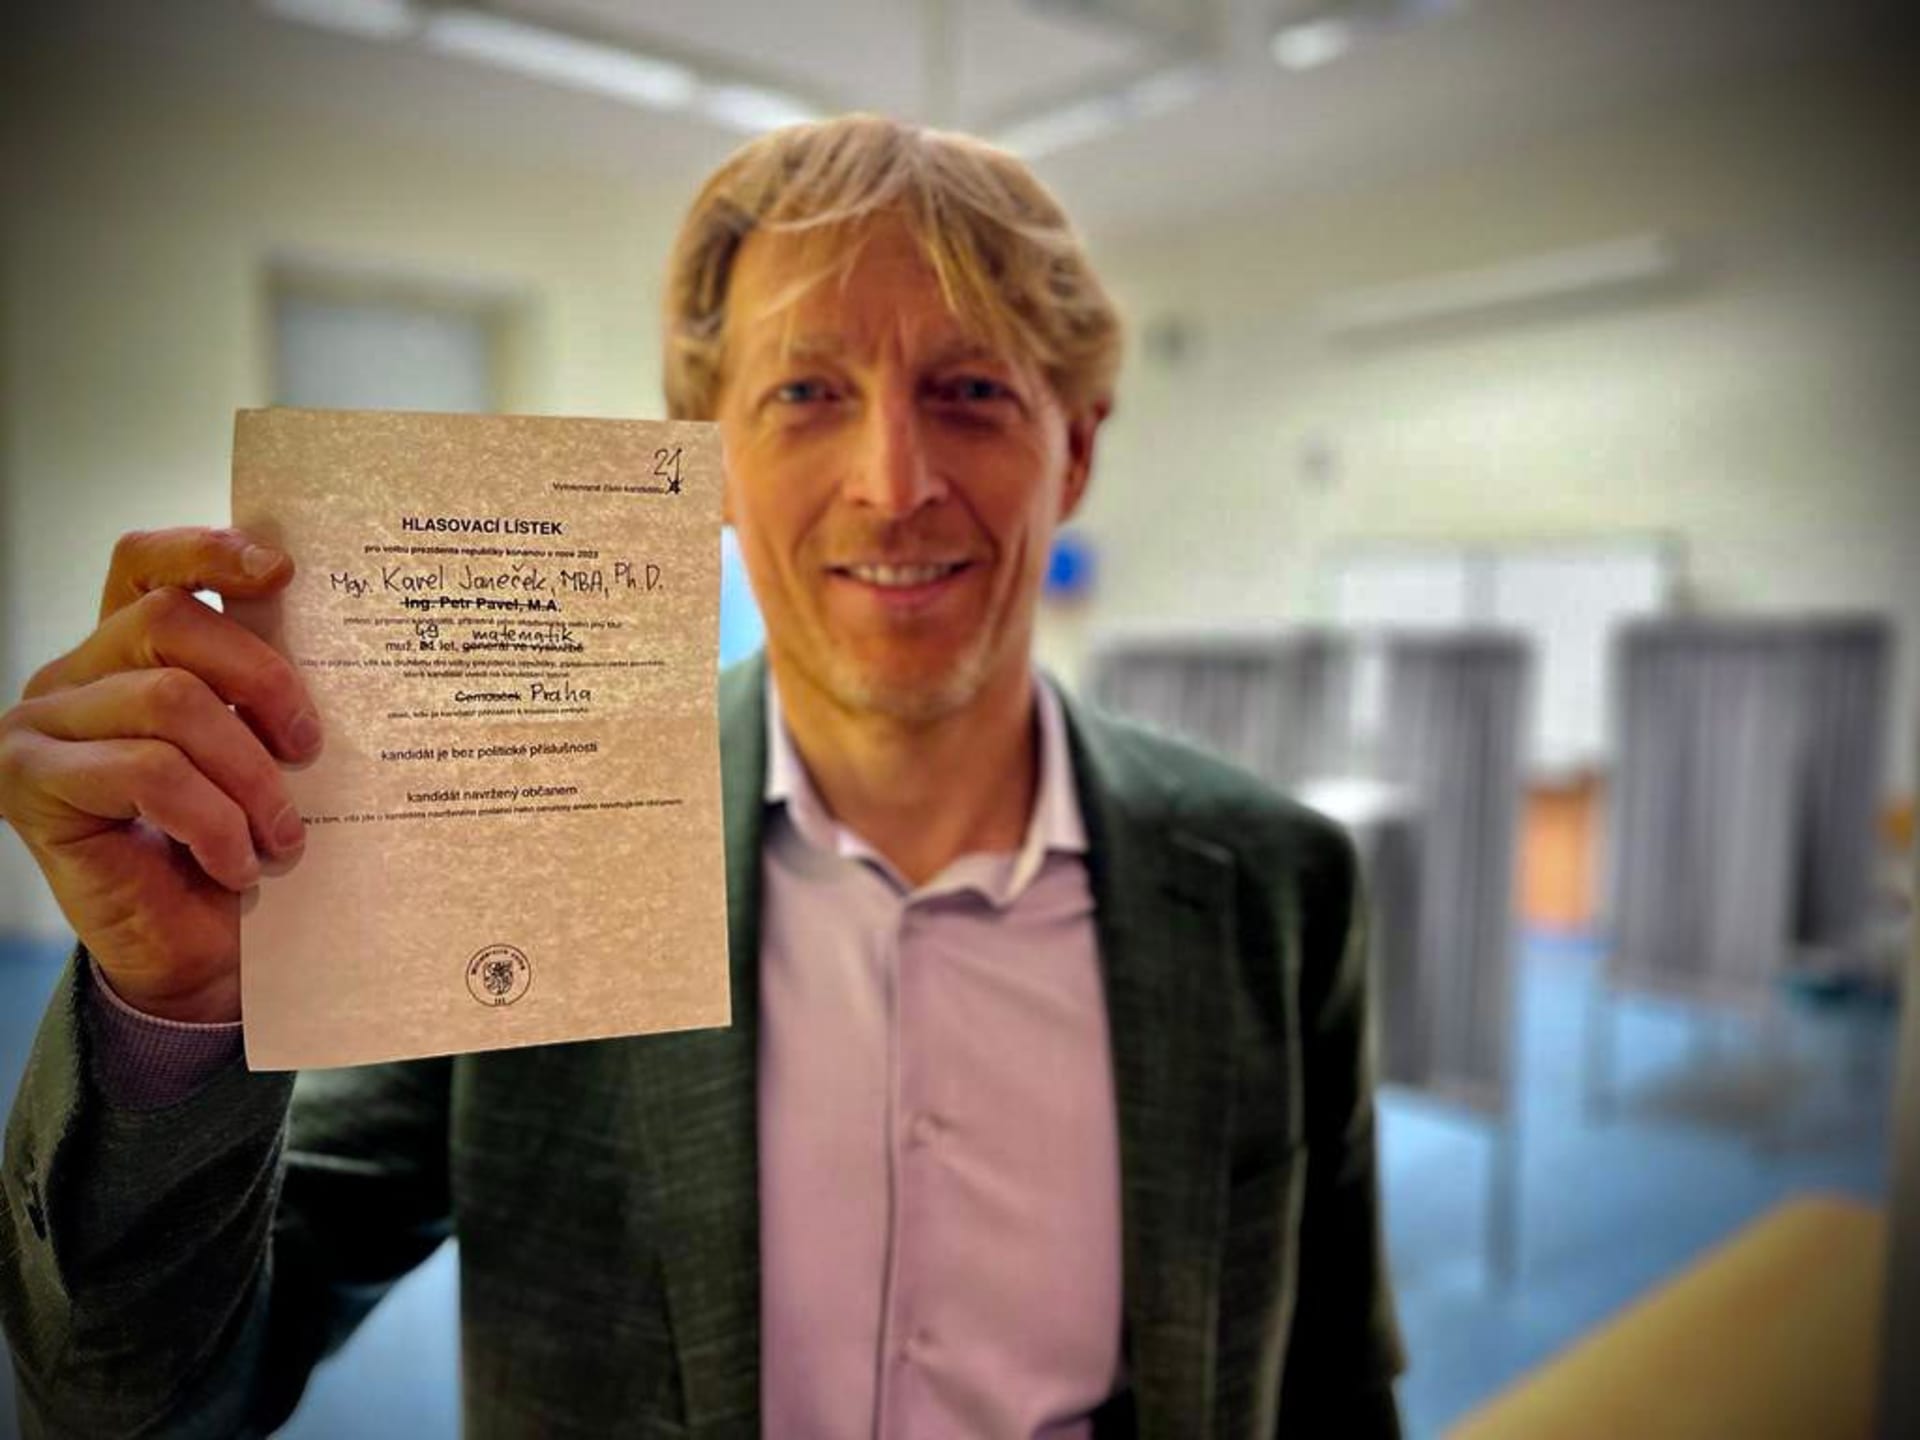 Karel Janeček sdílel fotografii, na níž drží lístek kandidáta Petra Pavla. Jeho jméno přeškrtl a napsal místo něj své.